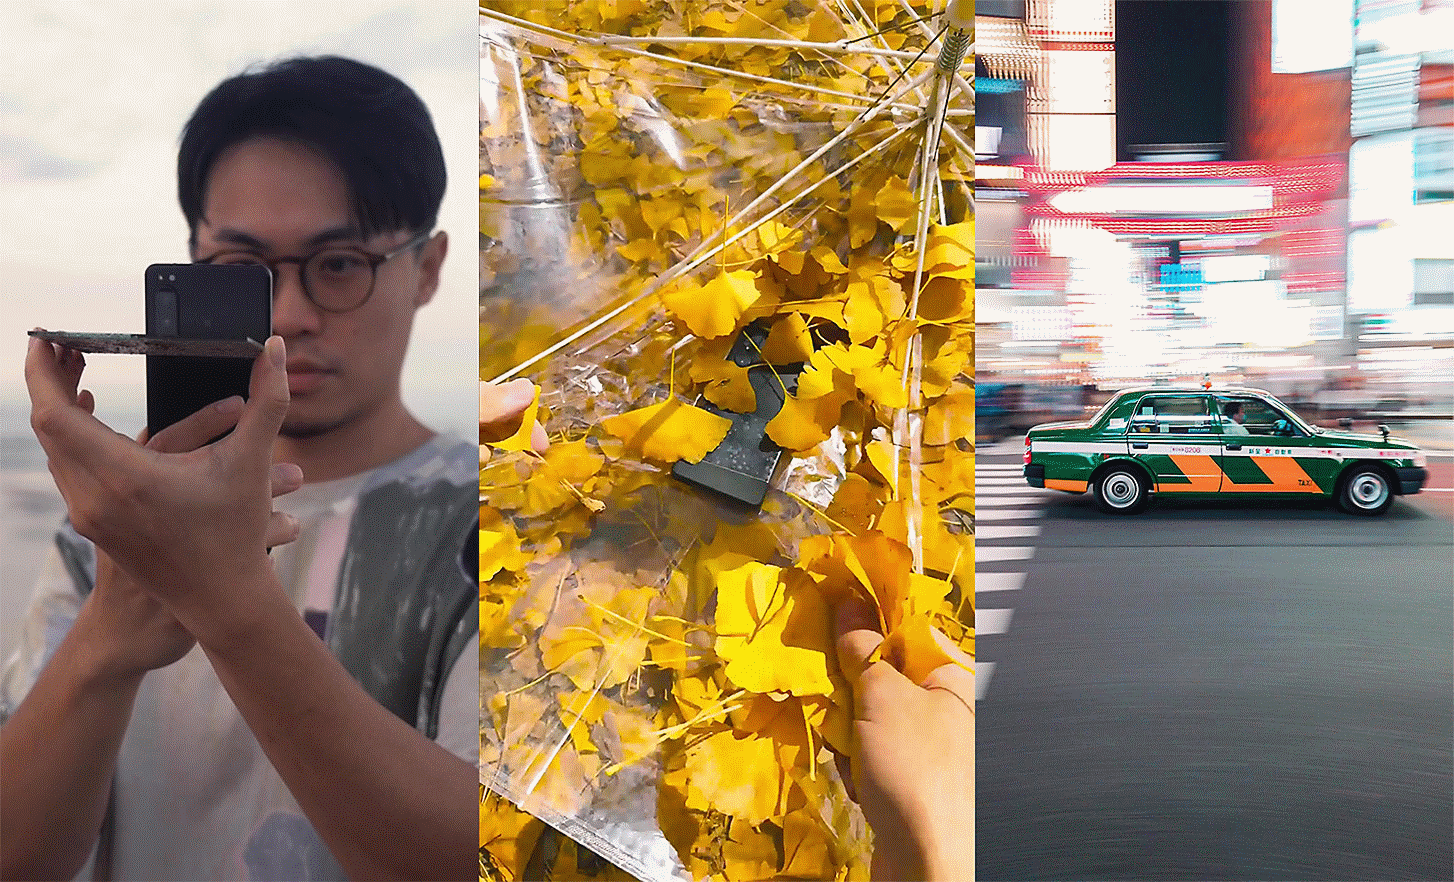 Drie portretten naast elkaar: links iemand die een foto maakt, in het midden een foto van een telefoon tussen bladeren en rechts een auto in de stad